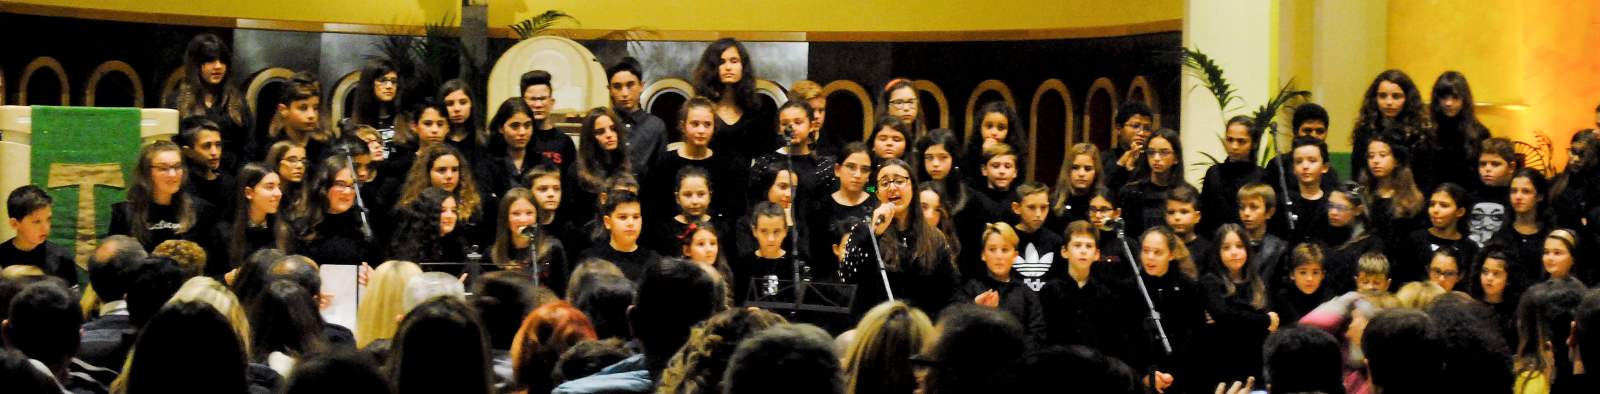 L’Isc Centro celebra Santa Cecilia con i “Talenti” del 7° festival del canto